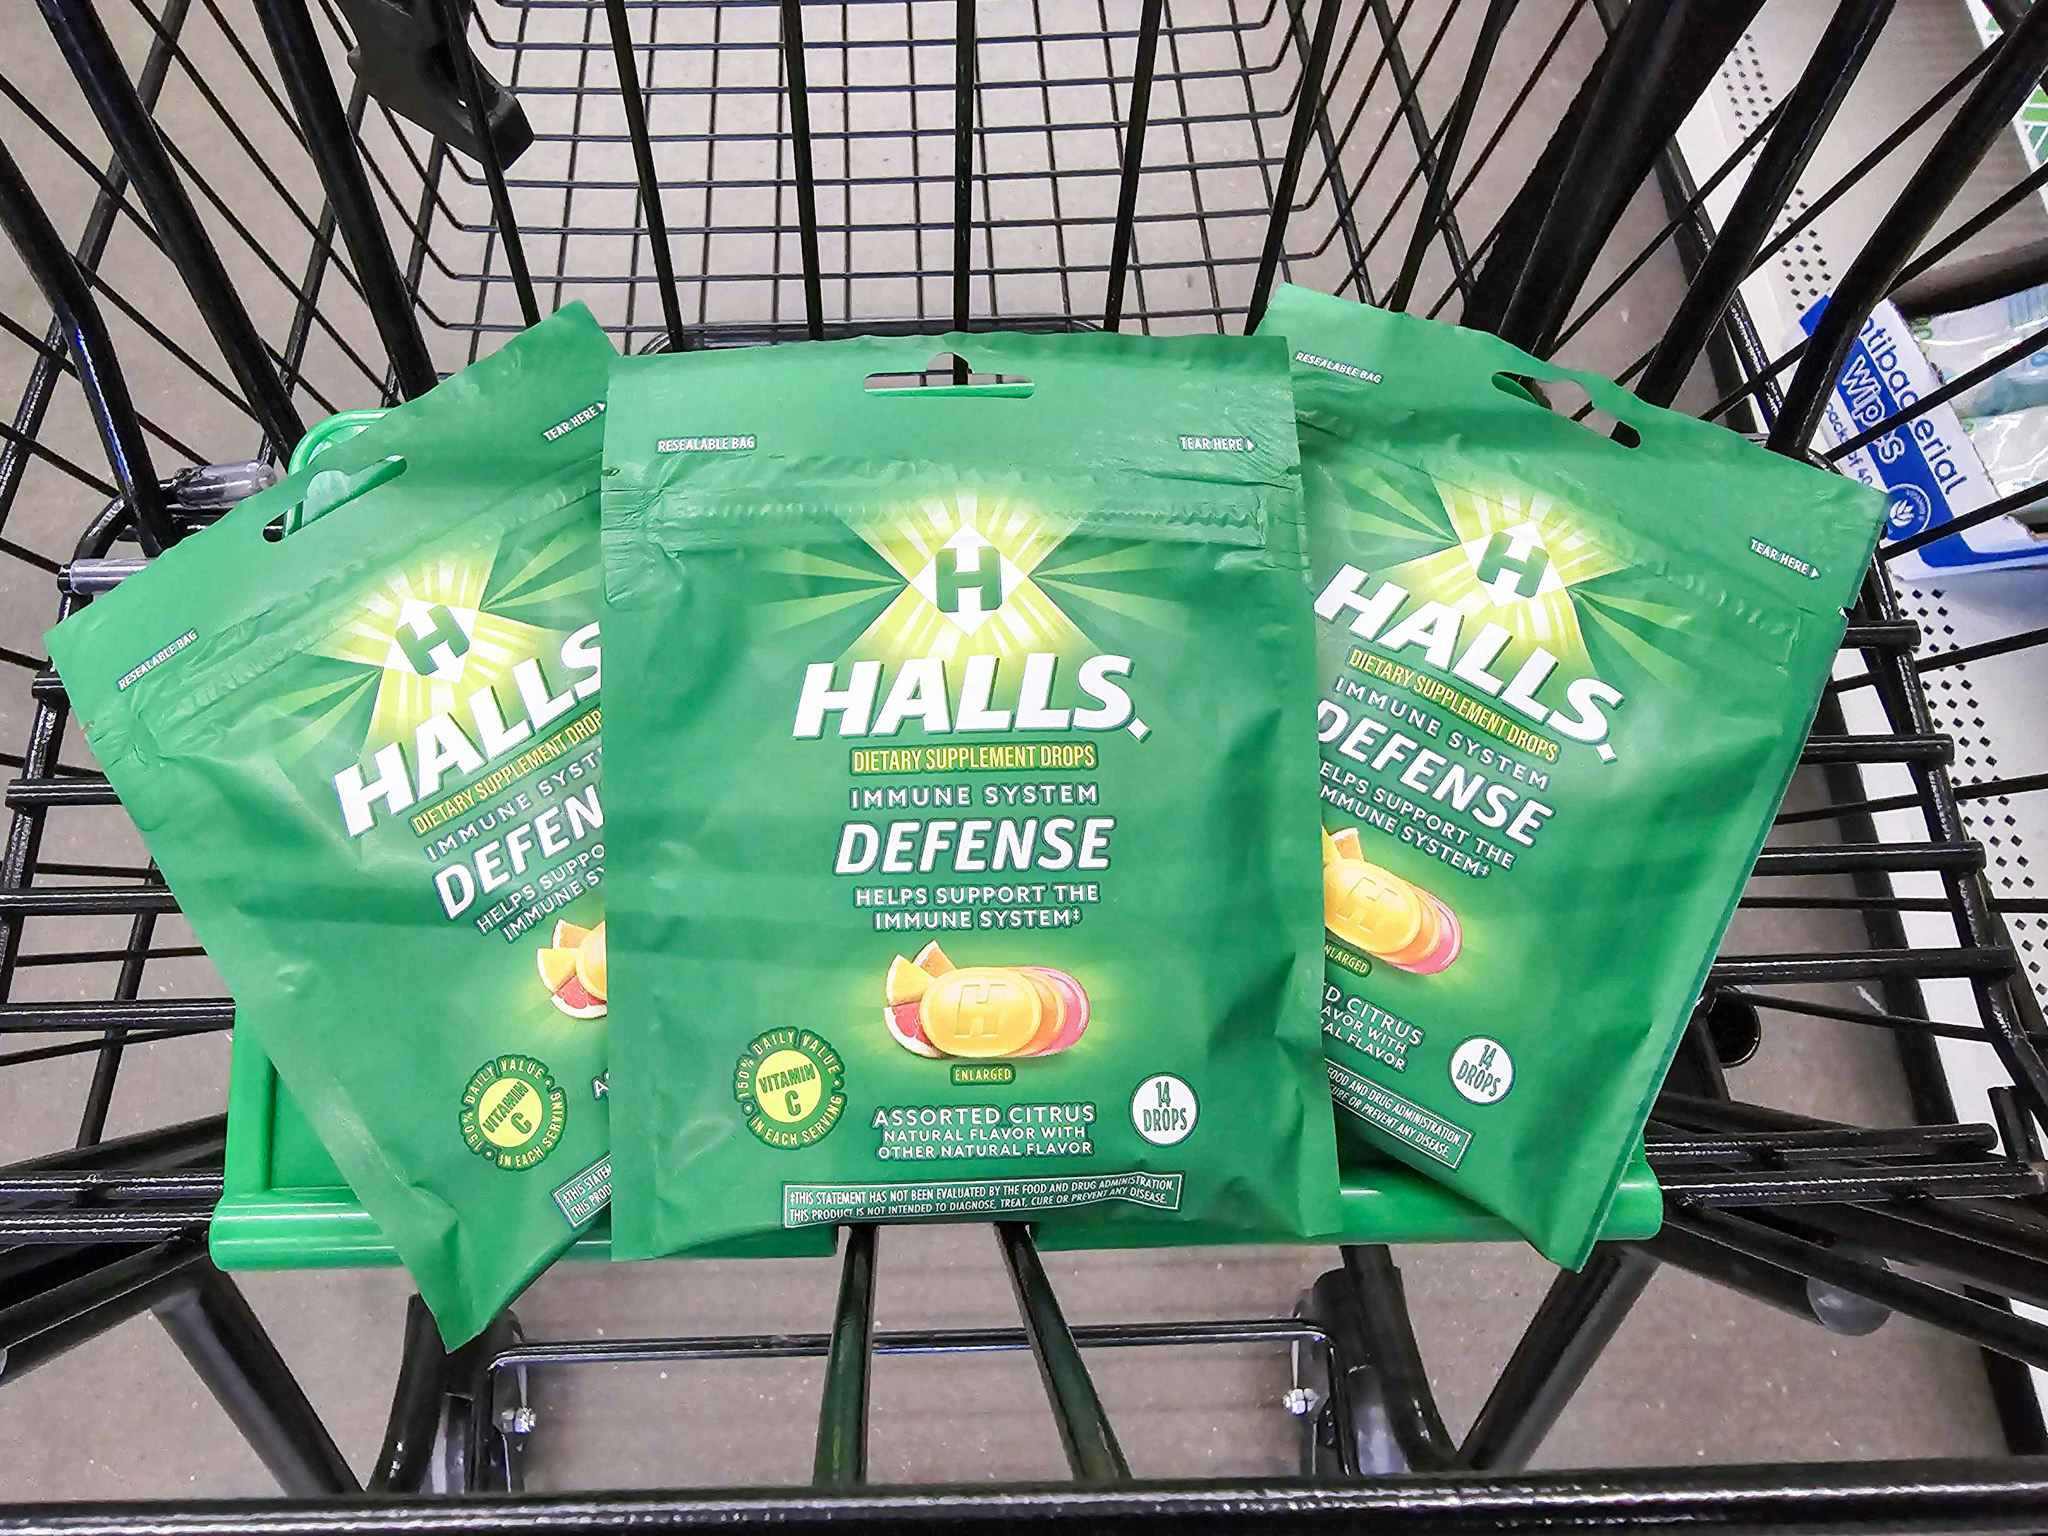 3 bags of halls cough drops in a cart